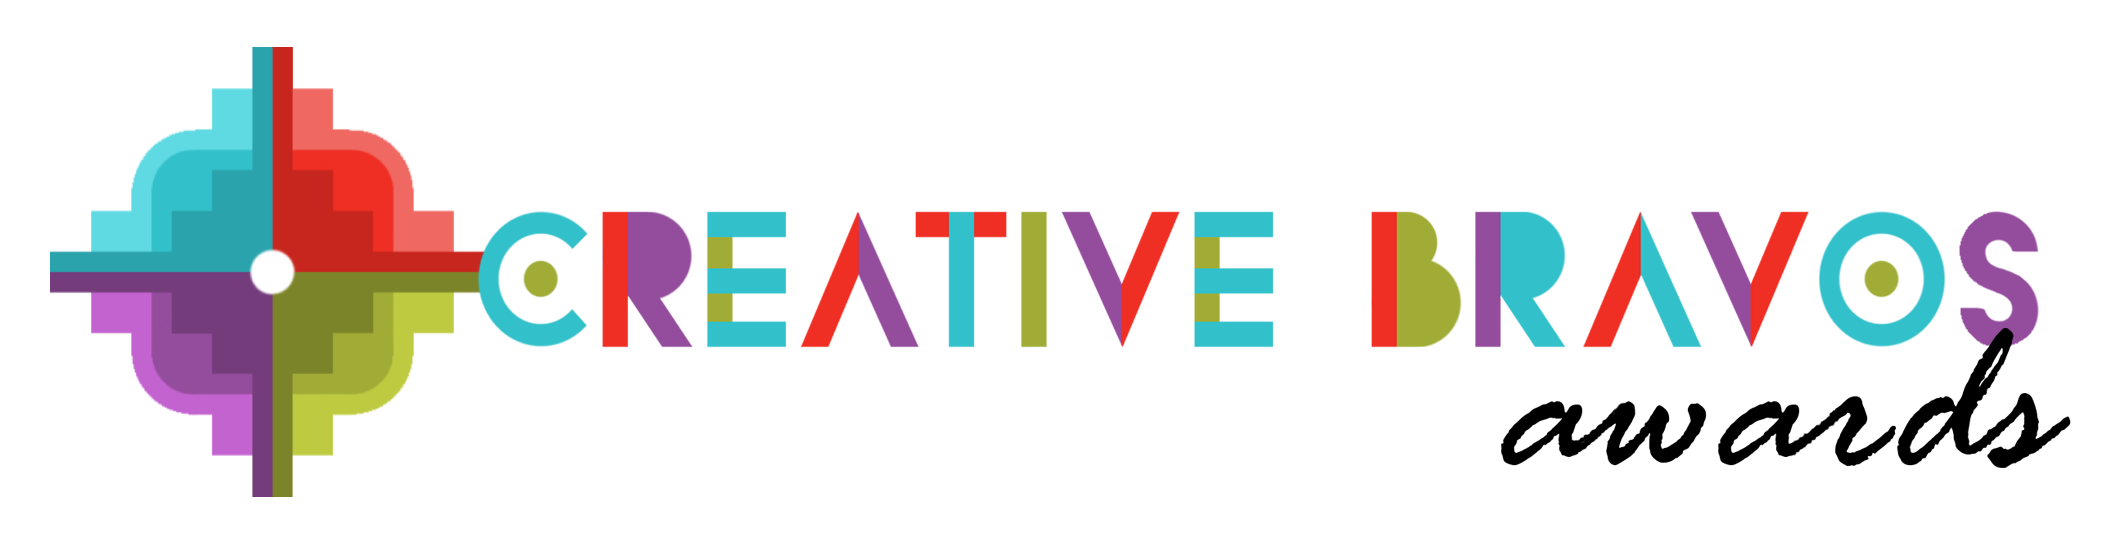 The Creative Bravos Award logo